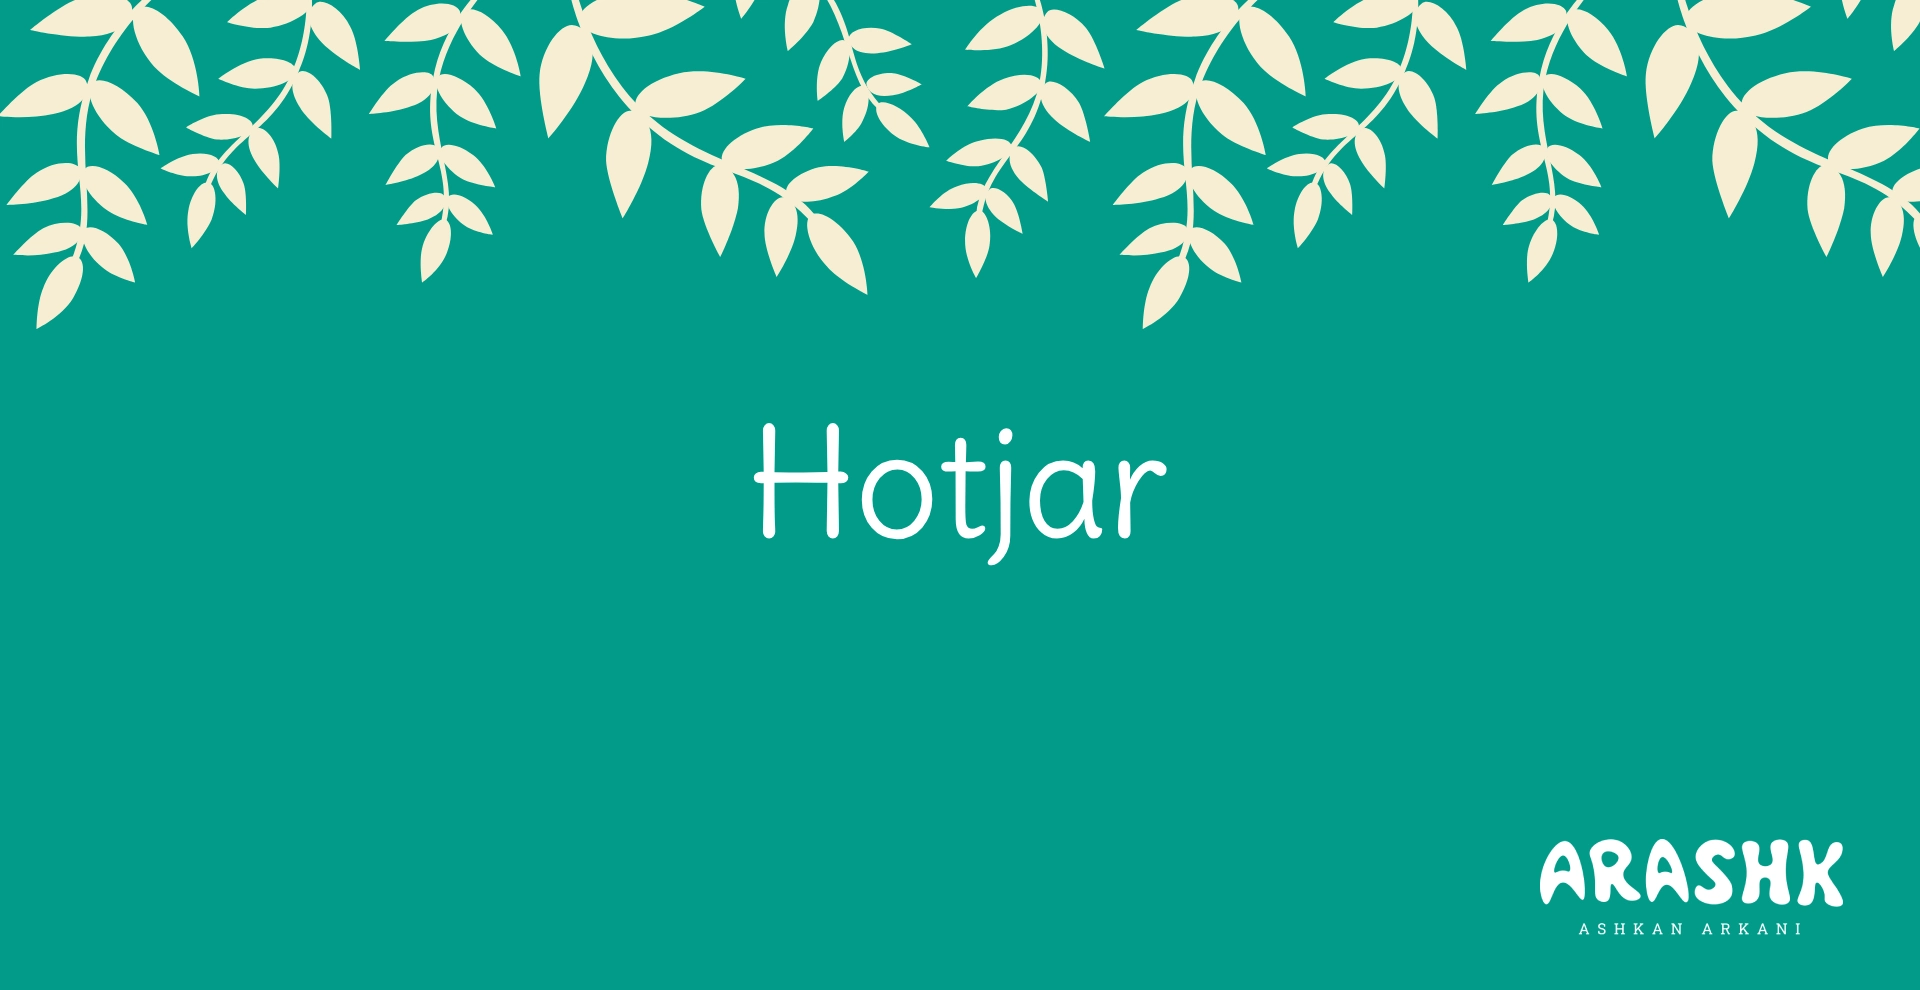 هاتجر (Hotjar) چیست؟